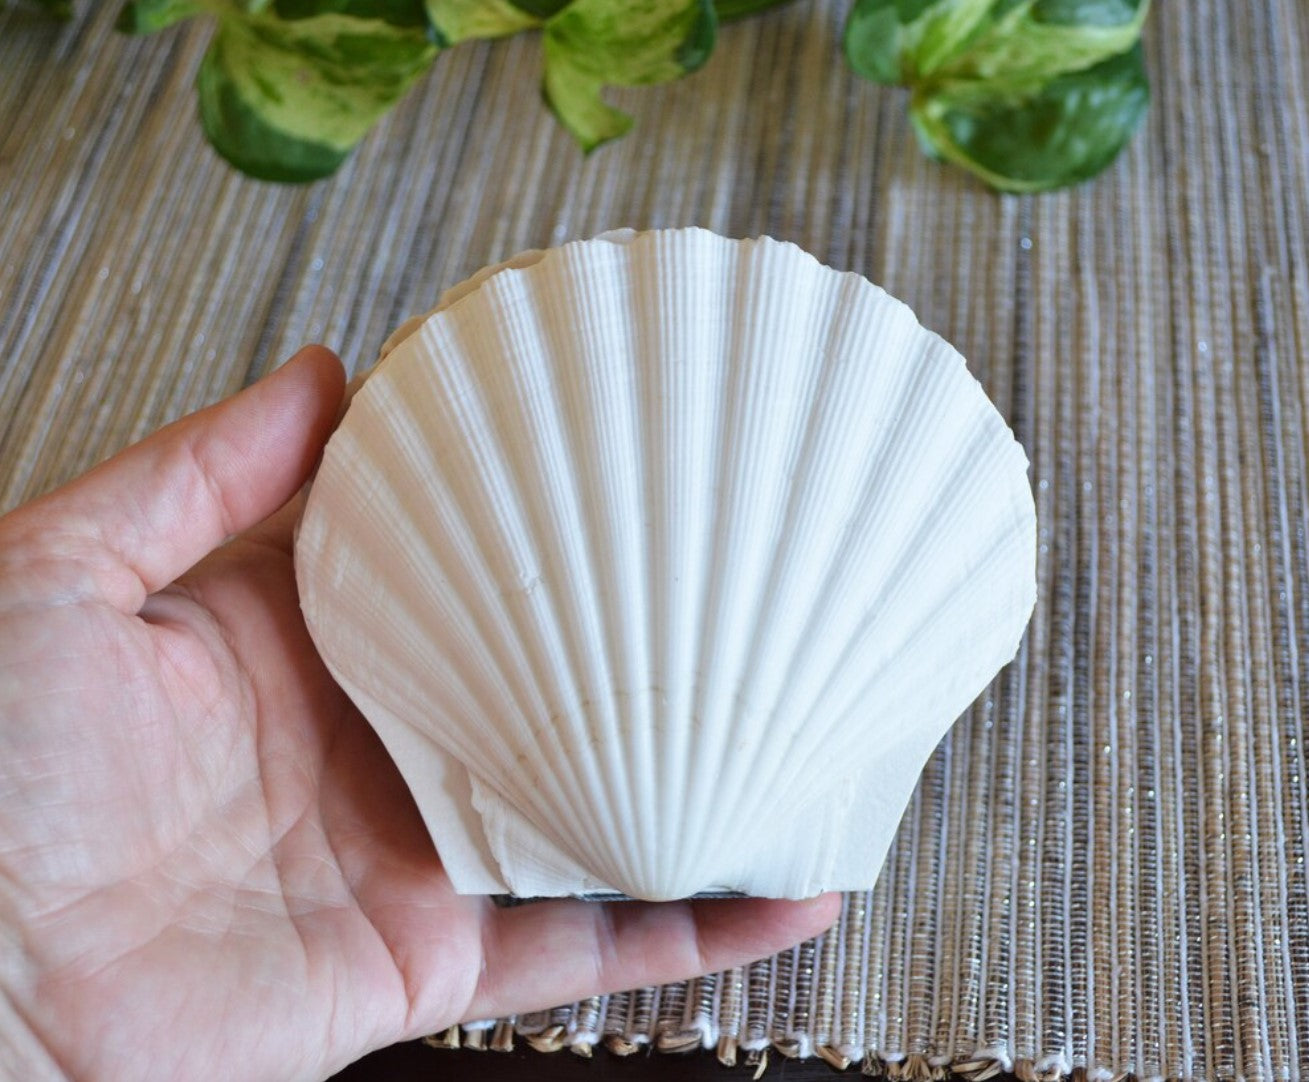 Genuine seashell scallop shell art journal / Blank book / watercolor paper sketchbook / handmade art books/ nature walk book / Pecten shell